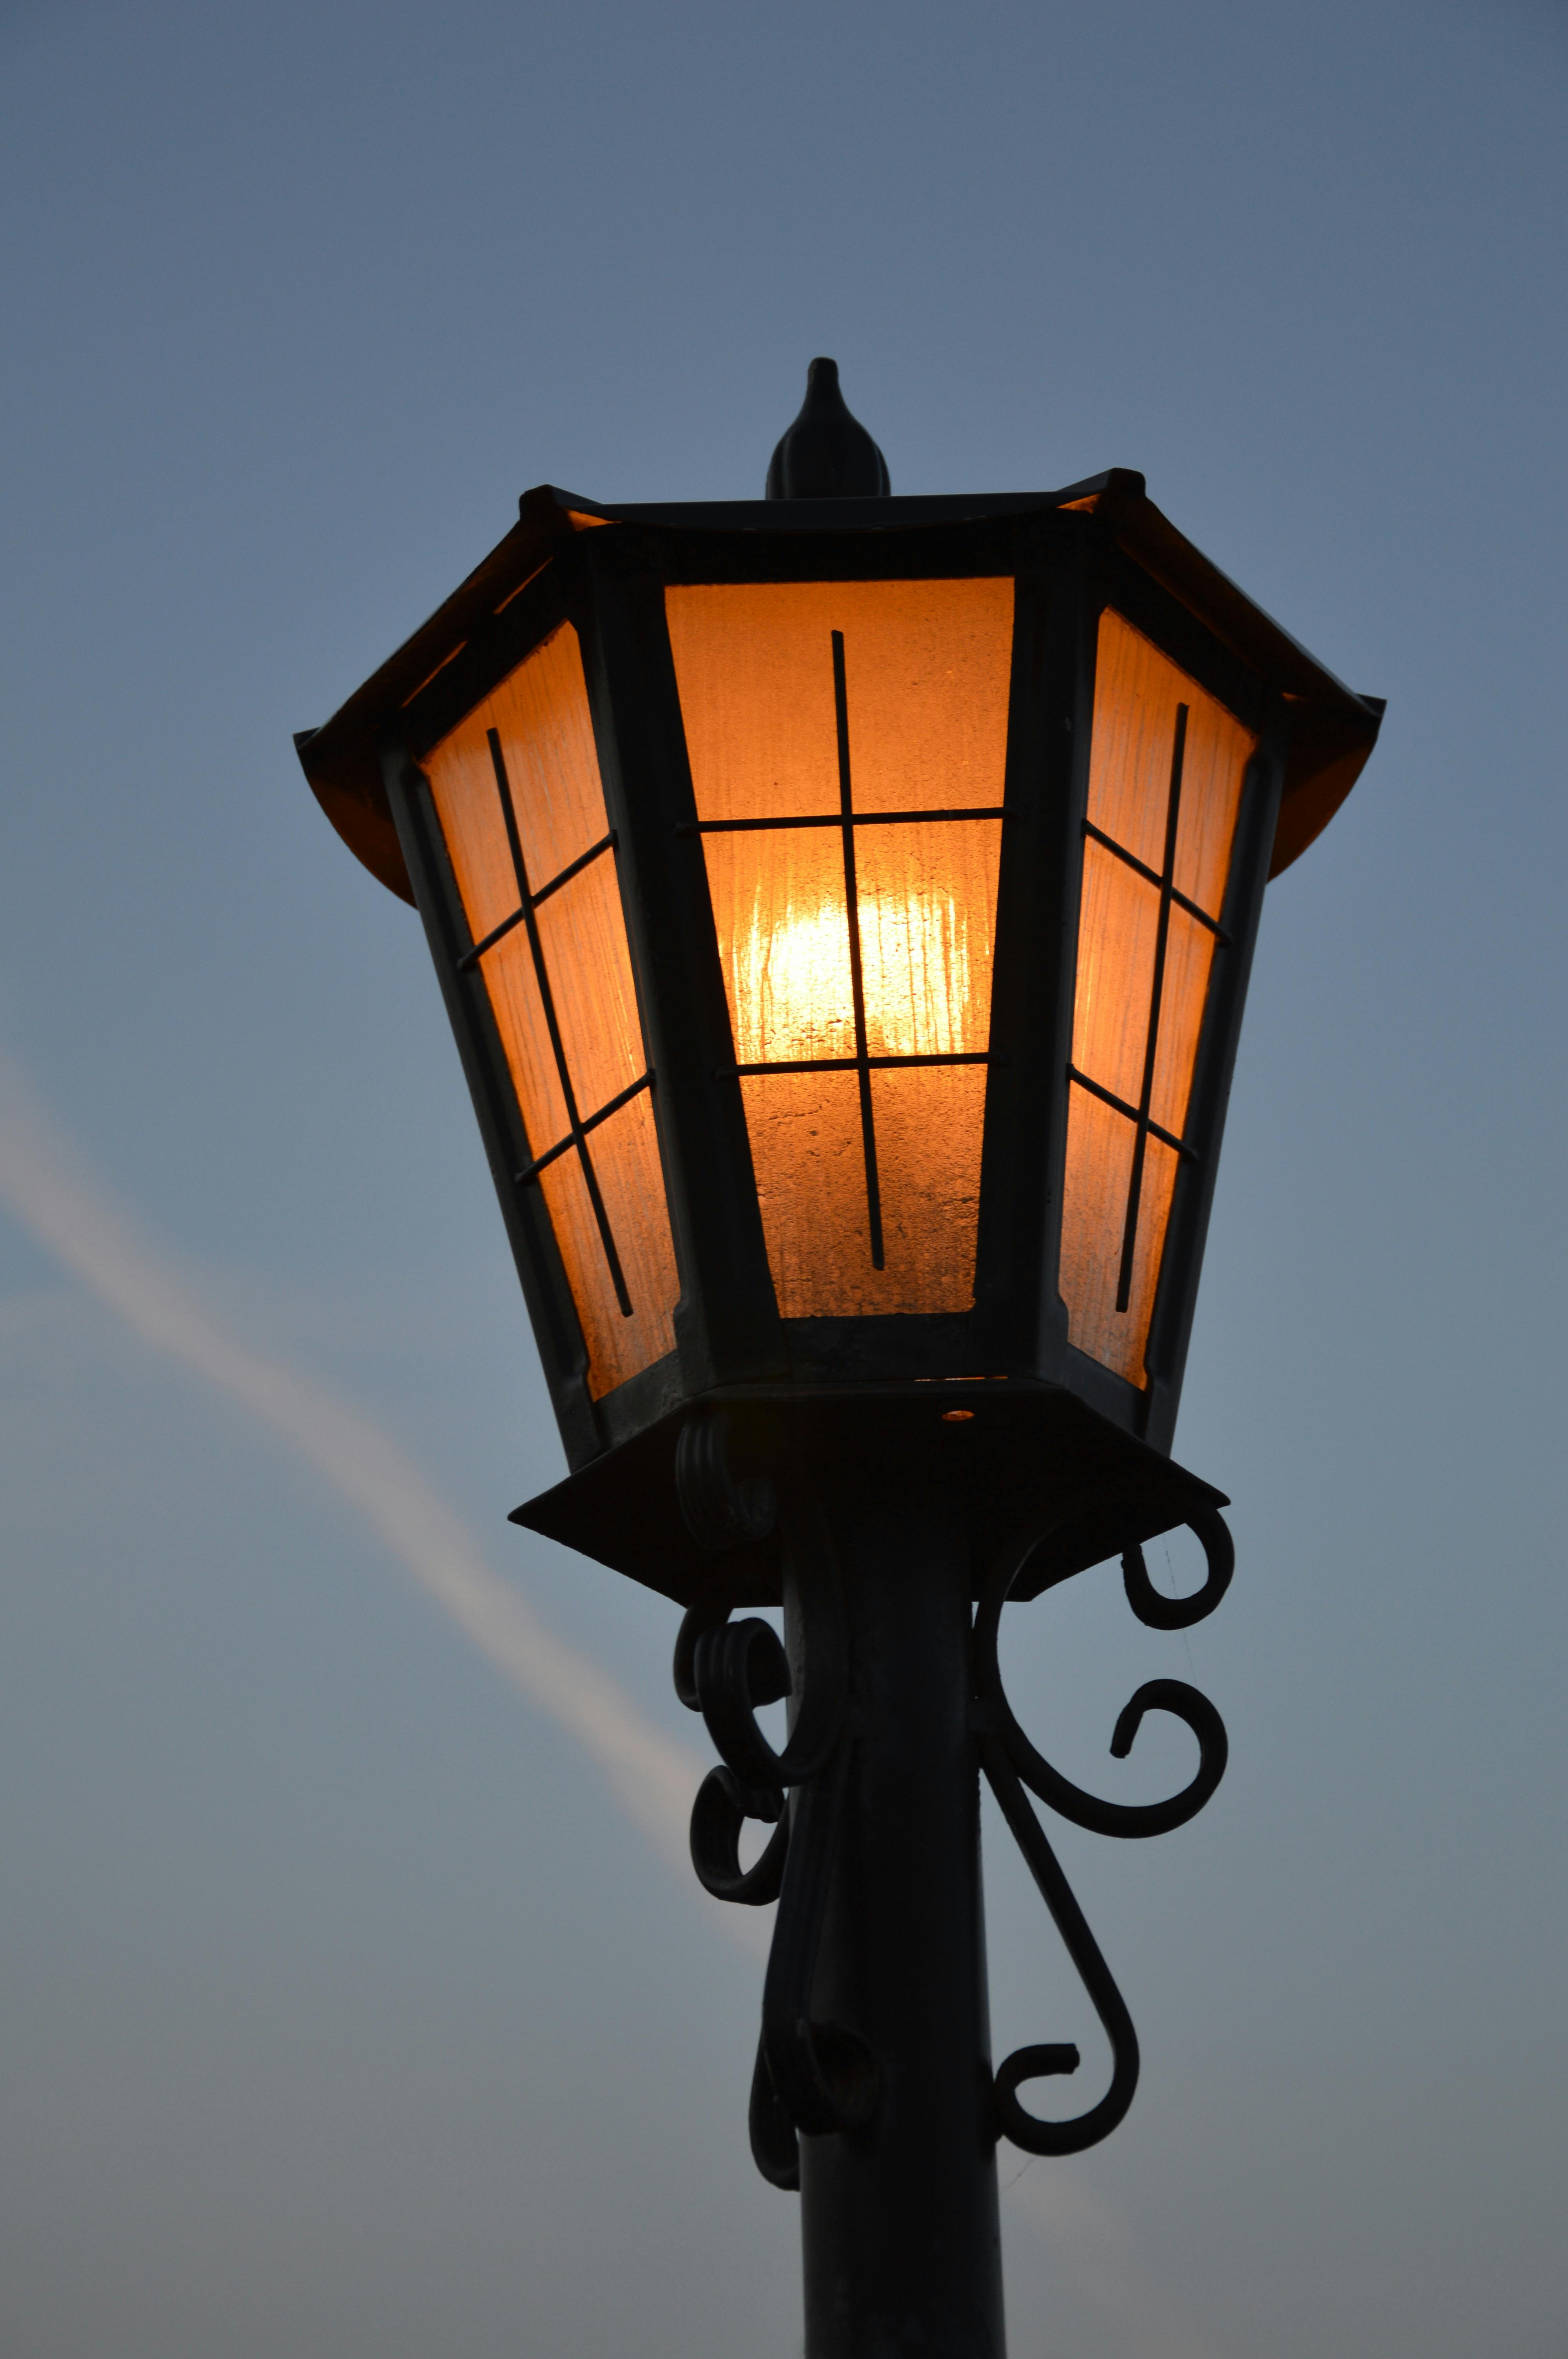 Wysokie stojące lampy ogrodowe — co trzeba wiedzieć?